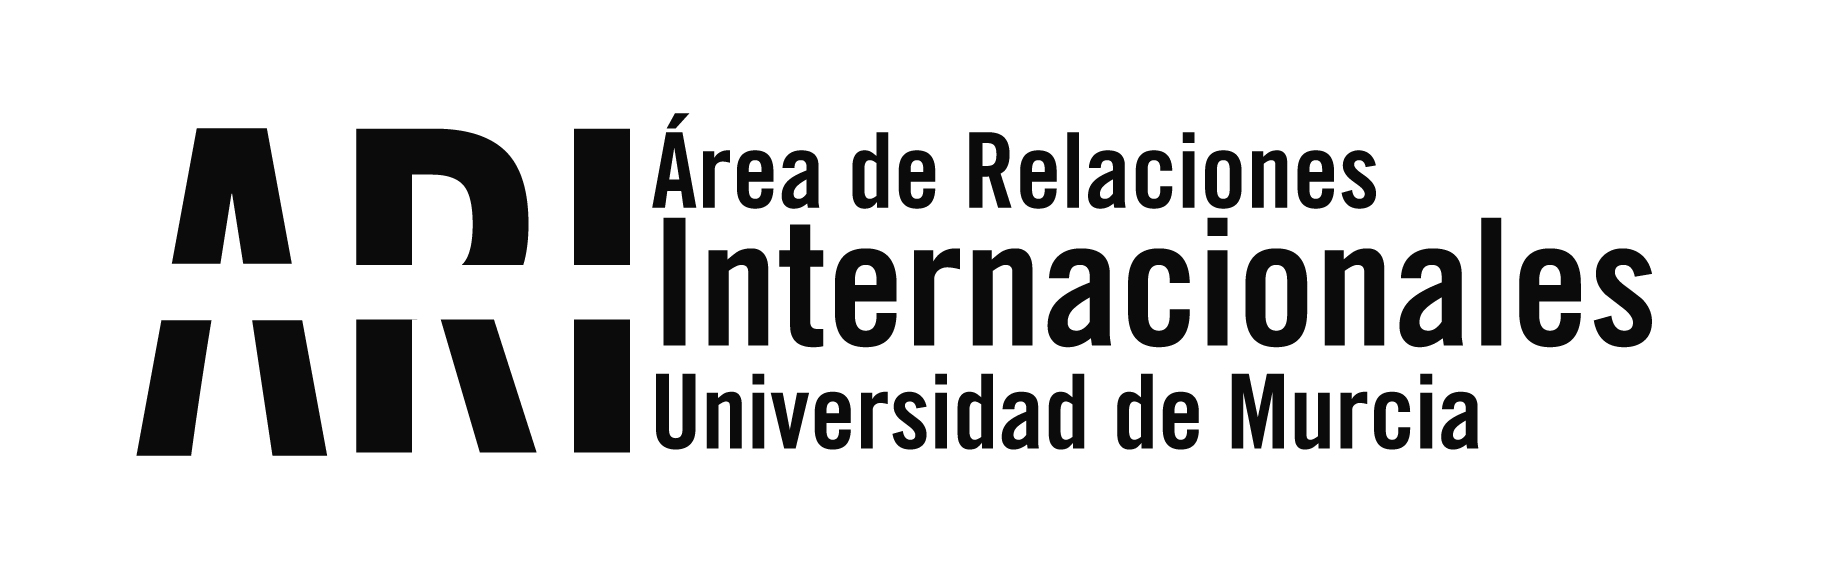 Alumnos UMU del programa ILA visitan son recibidos por el cónsul General de España en Córdoba - Argentina - Área de Relaciones Internacionales